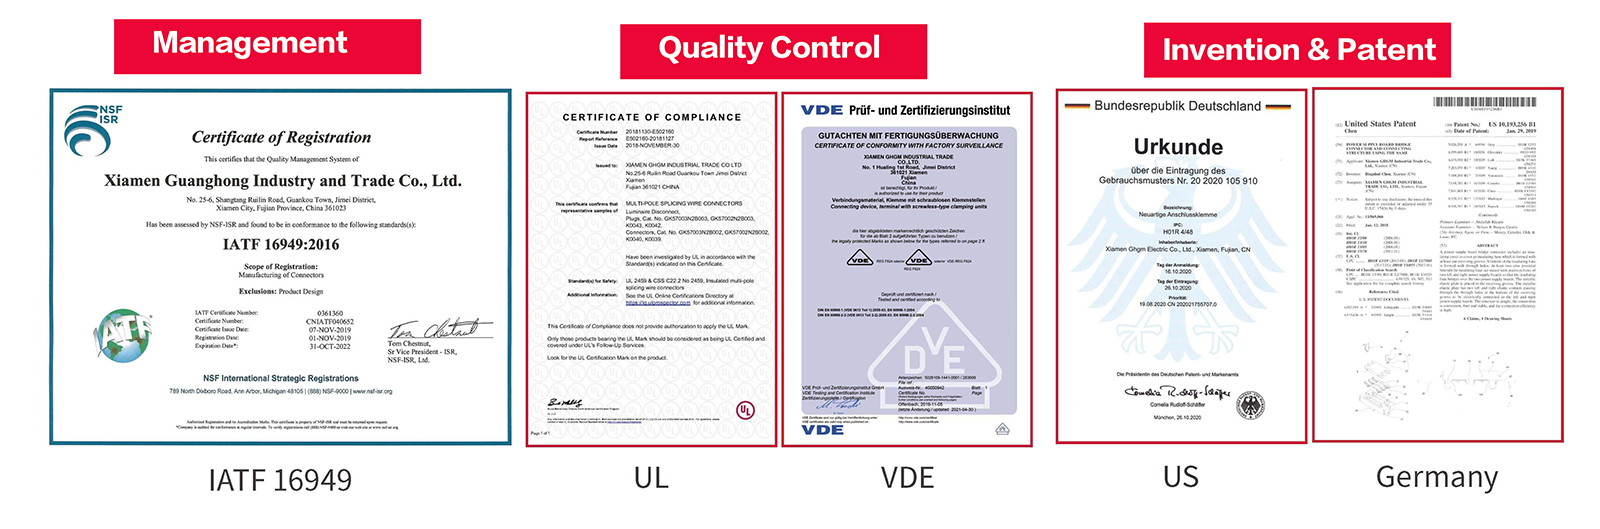 GHGM sertifikası, kalite kontrol, buluş ve patentler.jpg